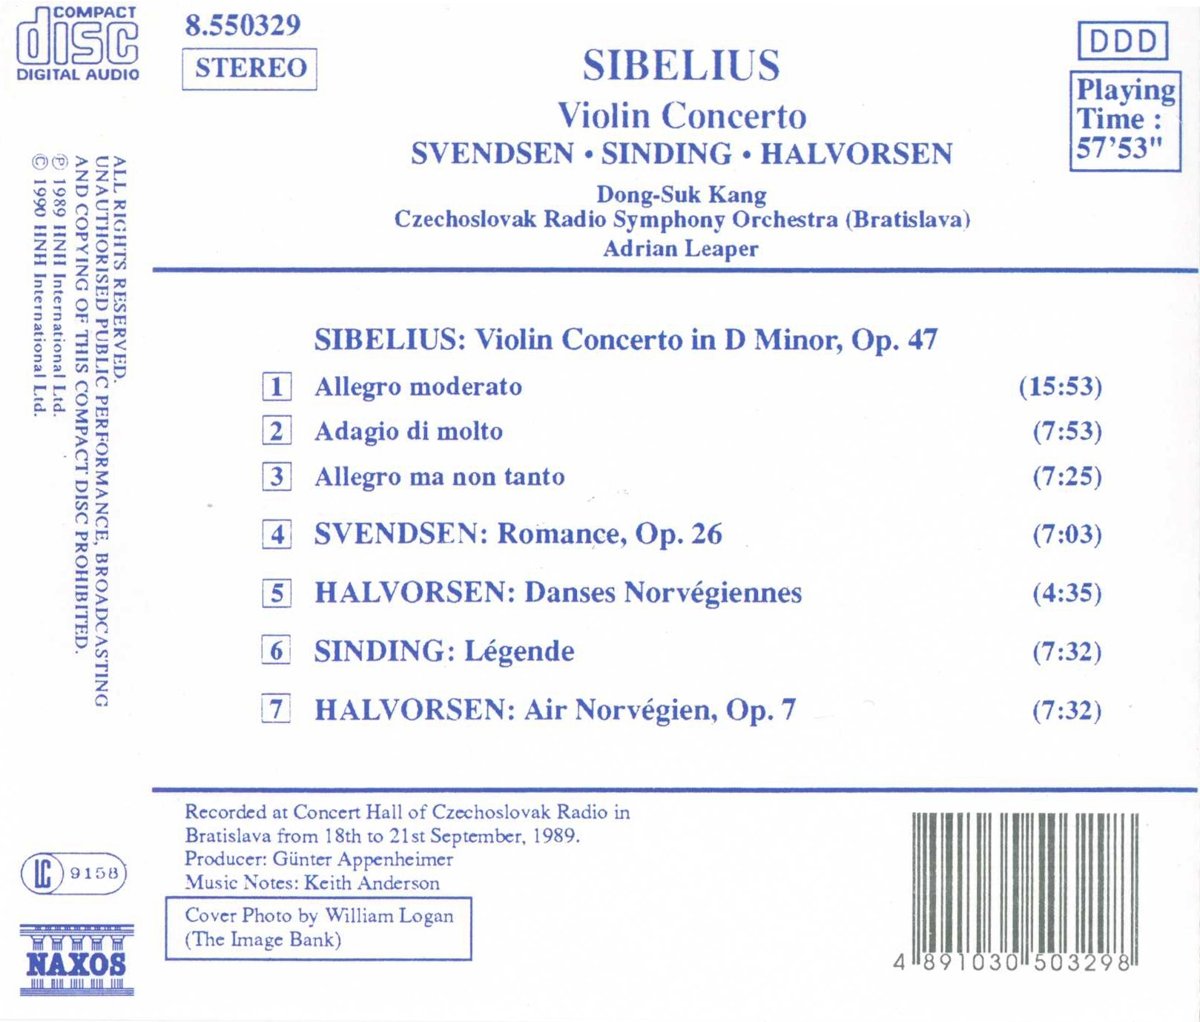 Sibelius: Violin Concerto / SINDING: Legende / HALVORSEN: Norwegian Dances - slide-1